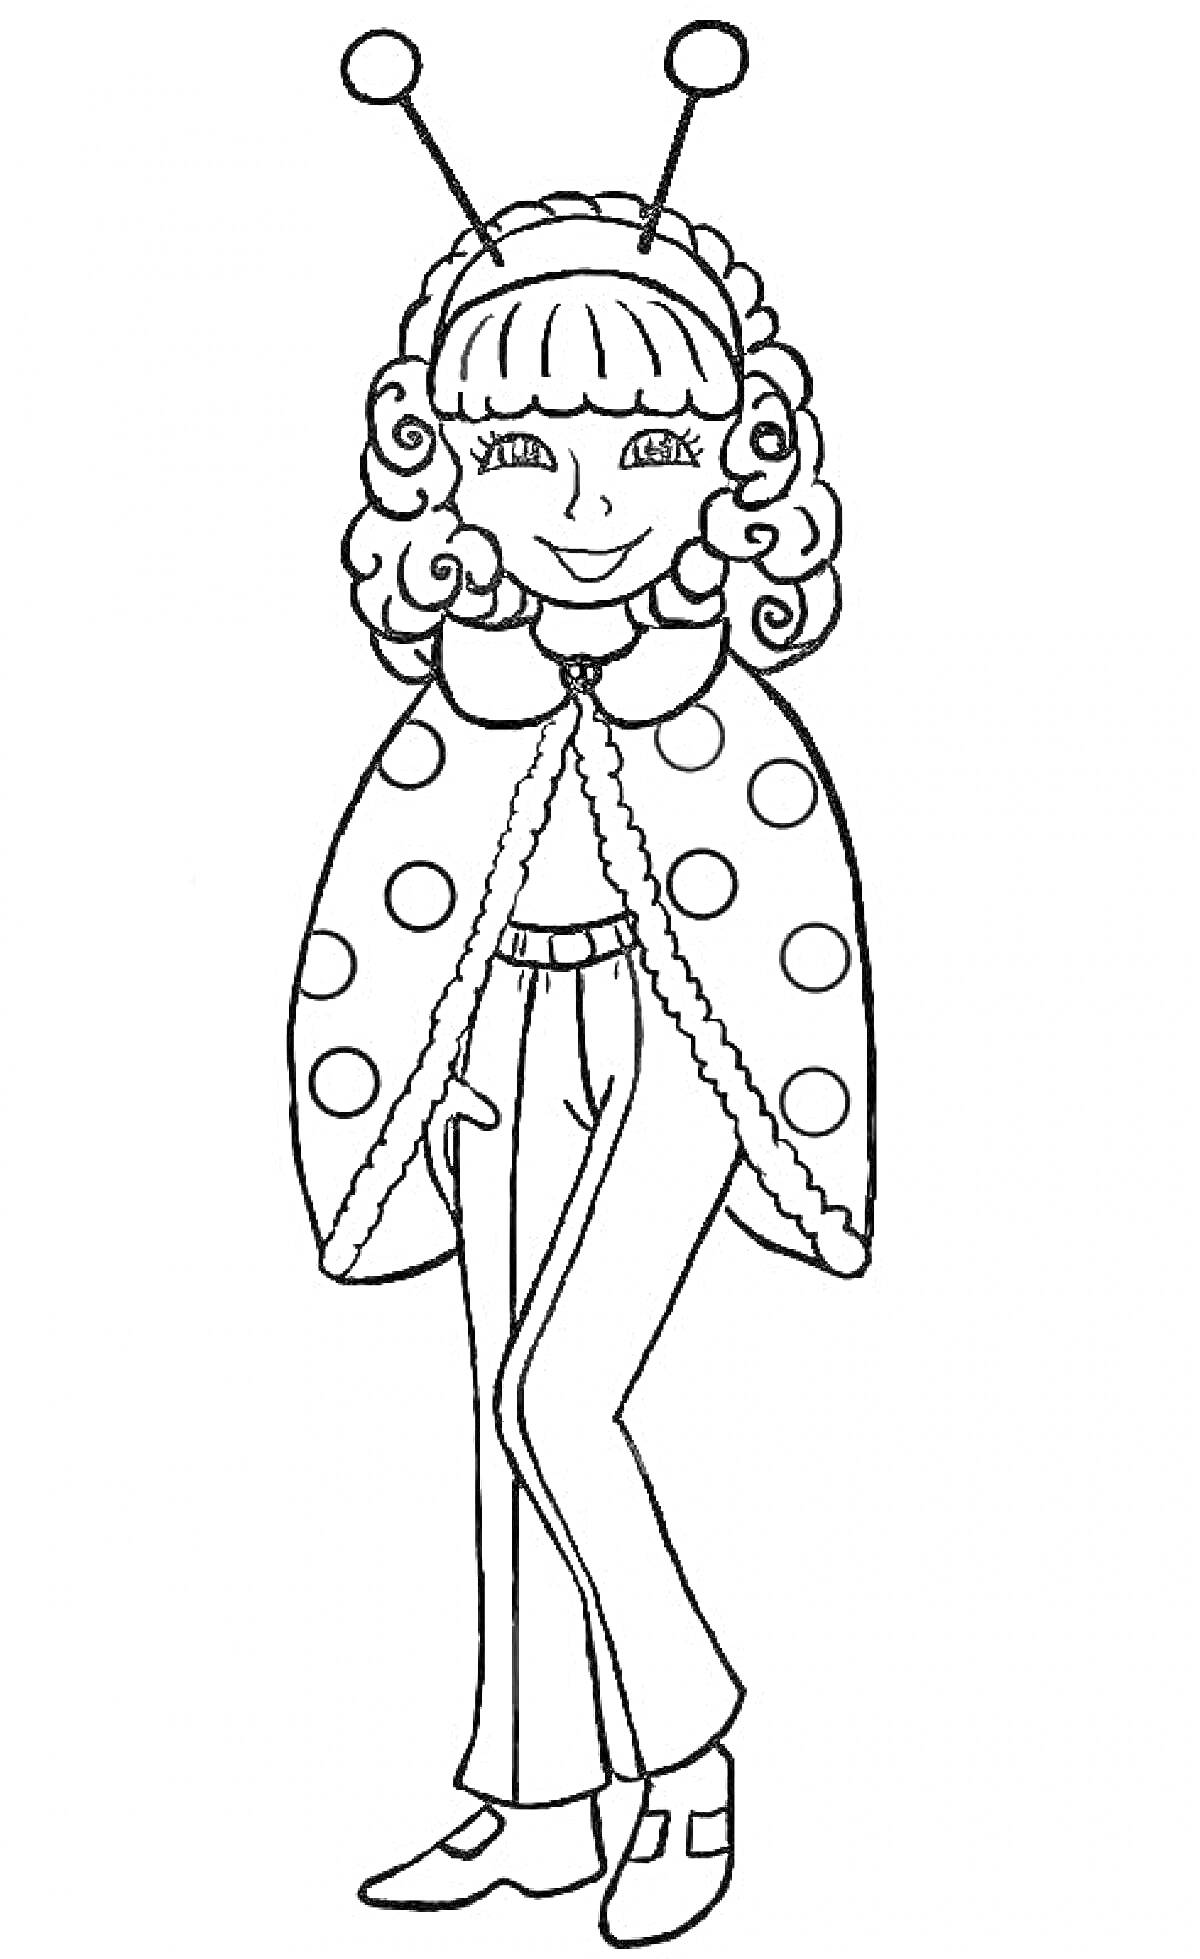 Раскраска Девочка в новогоднем костюме божьей коровки с усиками, плащом в горошек, кудрявыми волосами, брюками и туфлями.